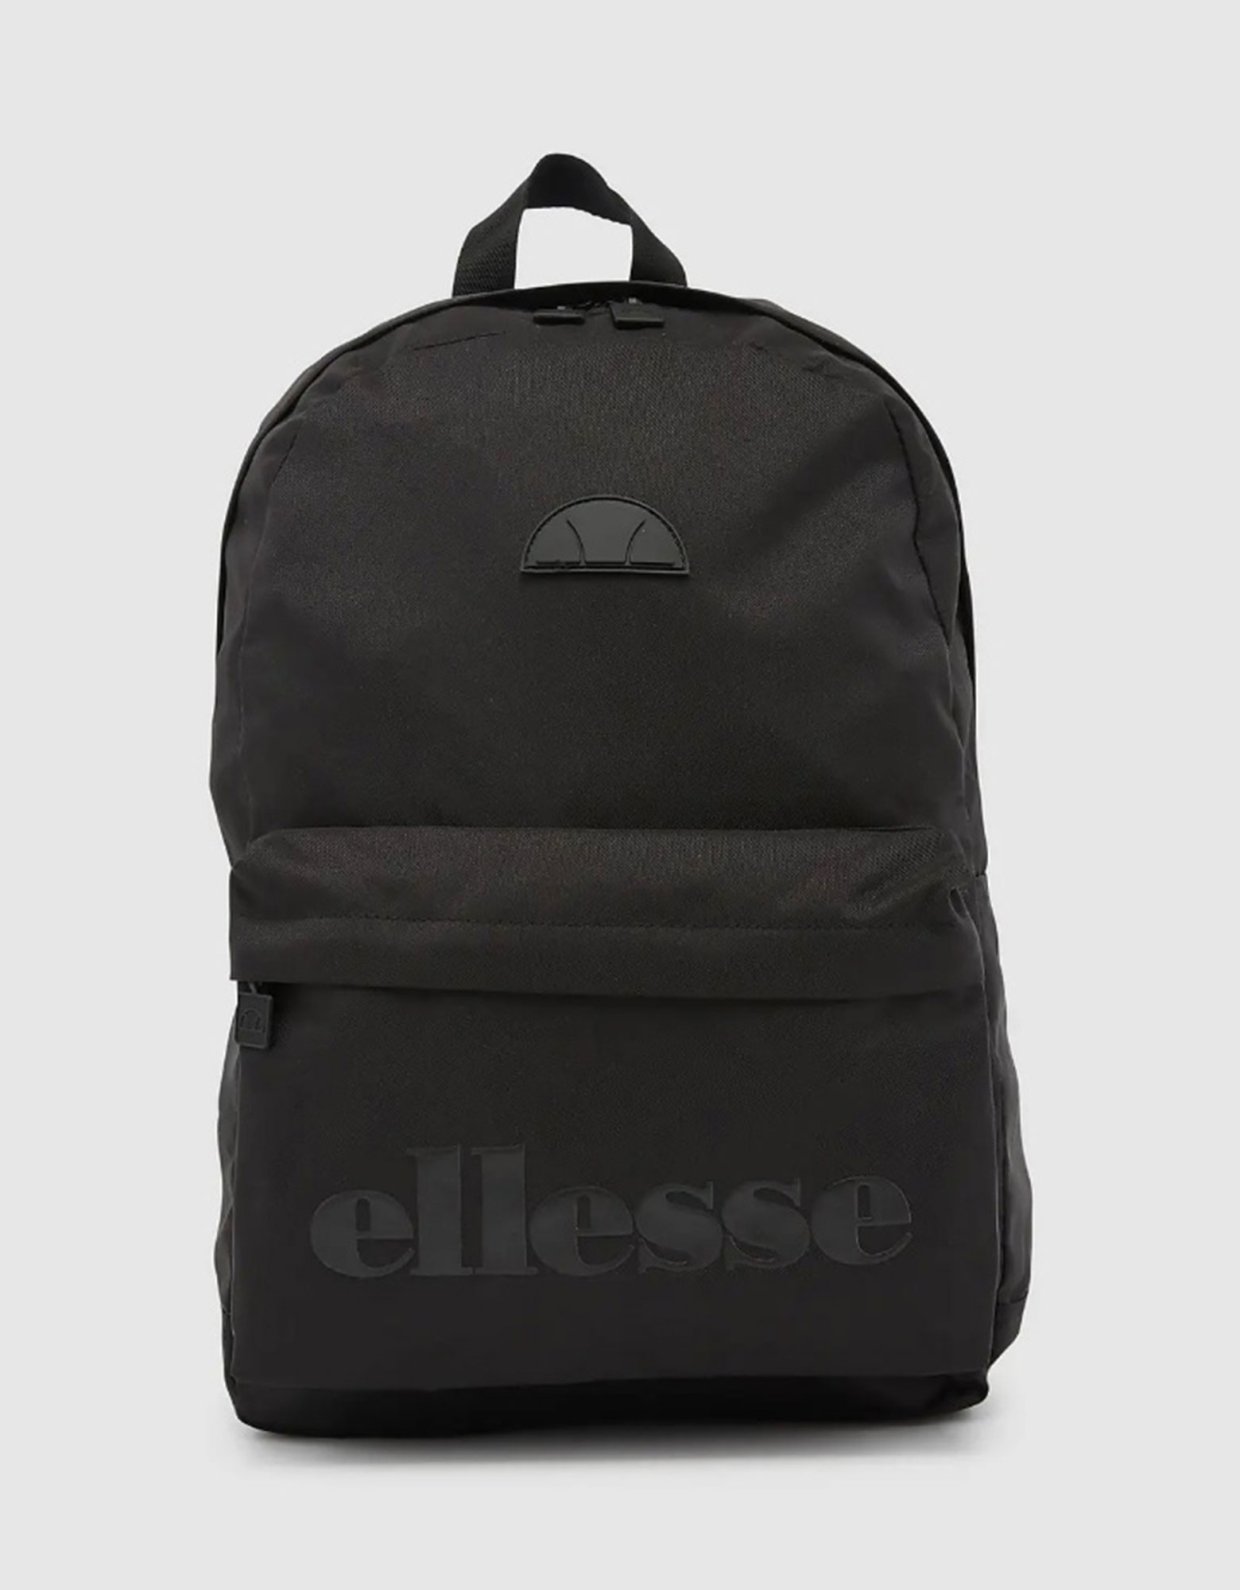 Ellesse Regent backpack black mono